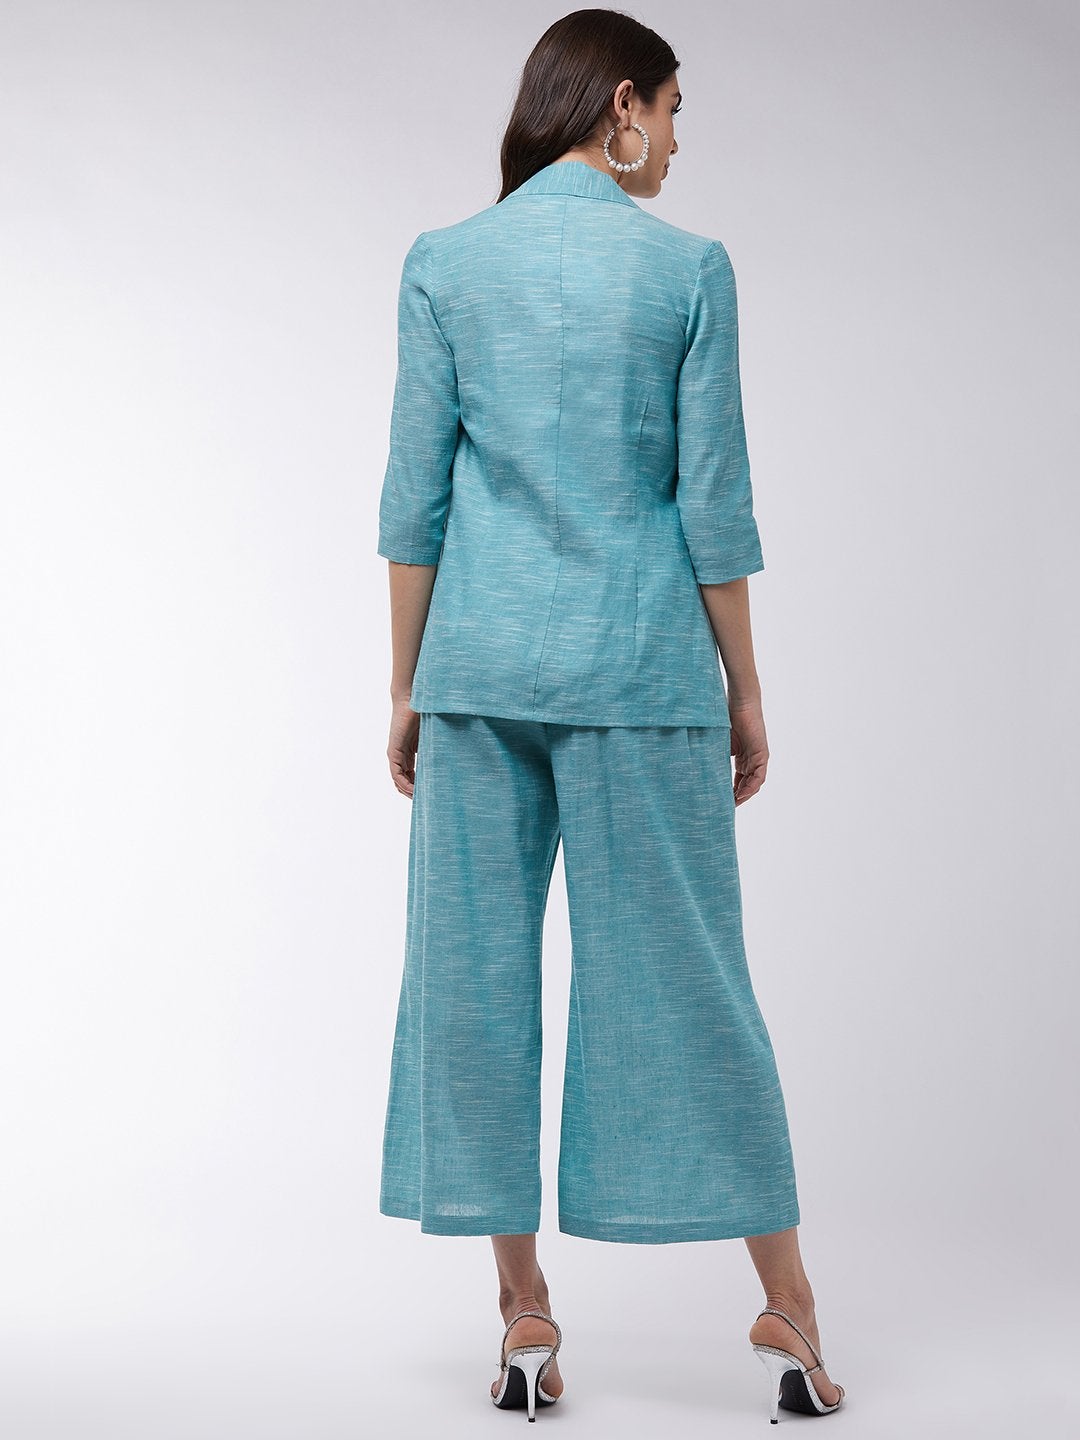 Women's Chambray Long Blazer And Pant Set - Pannkh